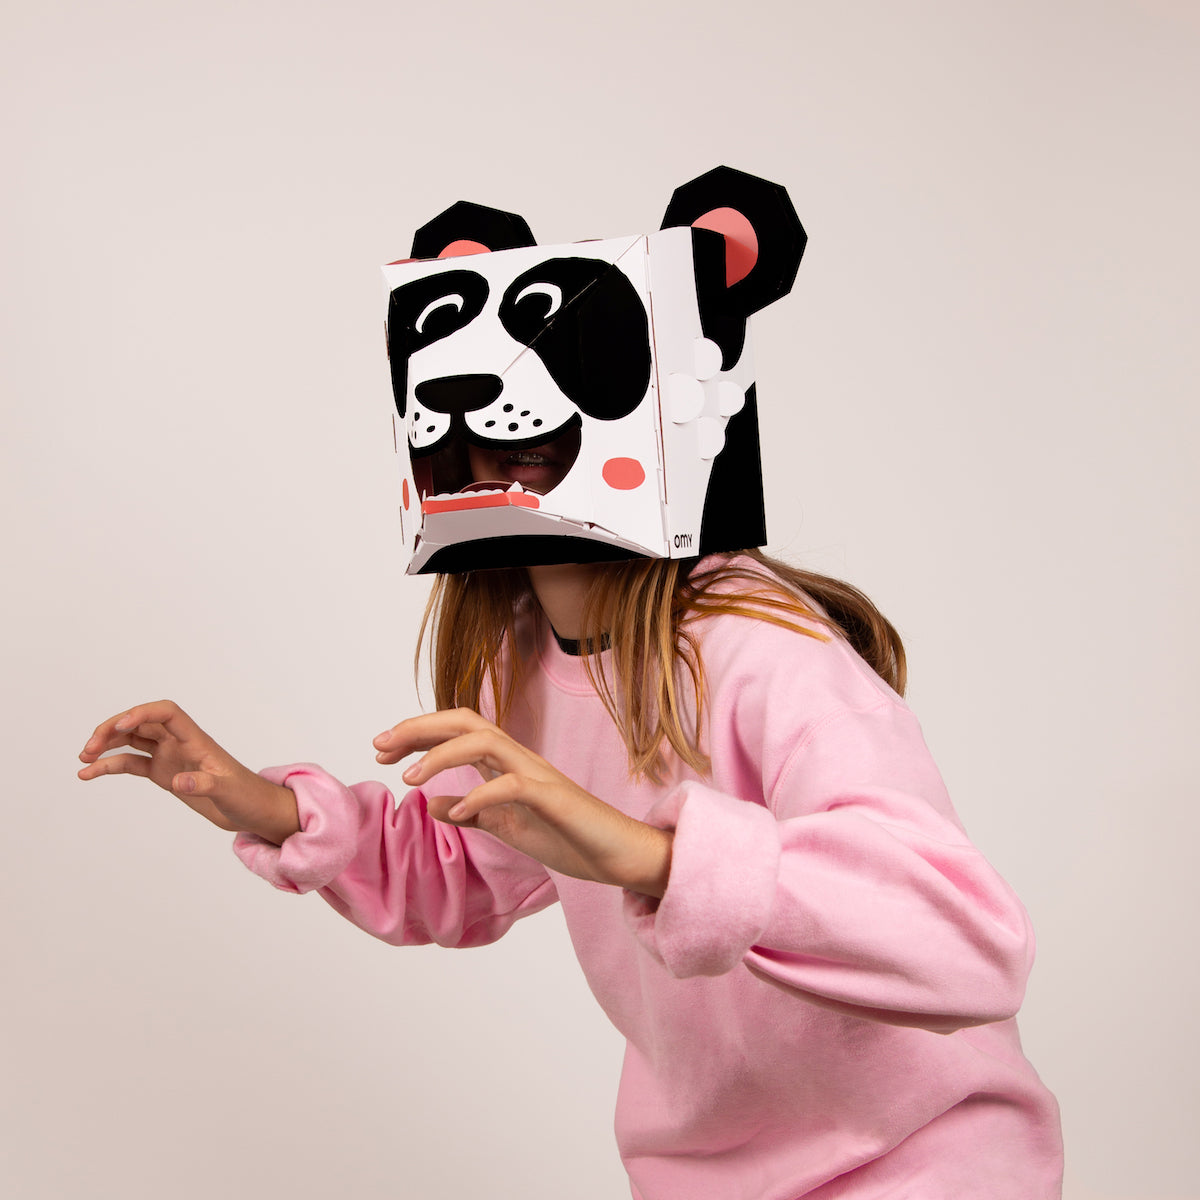 Met het OMY 3D masker Panda is niets wat het lijkt. Verras iedereen om je heen met dit vrolijke XXL 3D masker van een panda! Het masker wordt plat geleverd, maar jij kan hem zelf helemaal in elkaar zetten. VanZus.